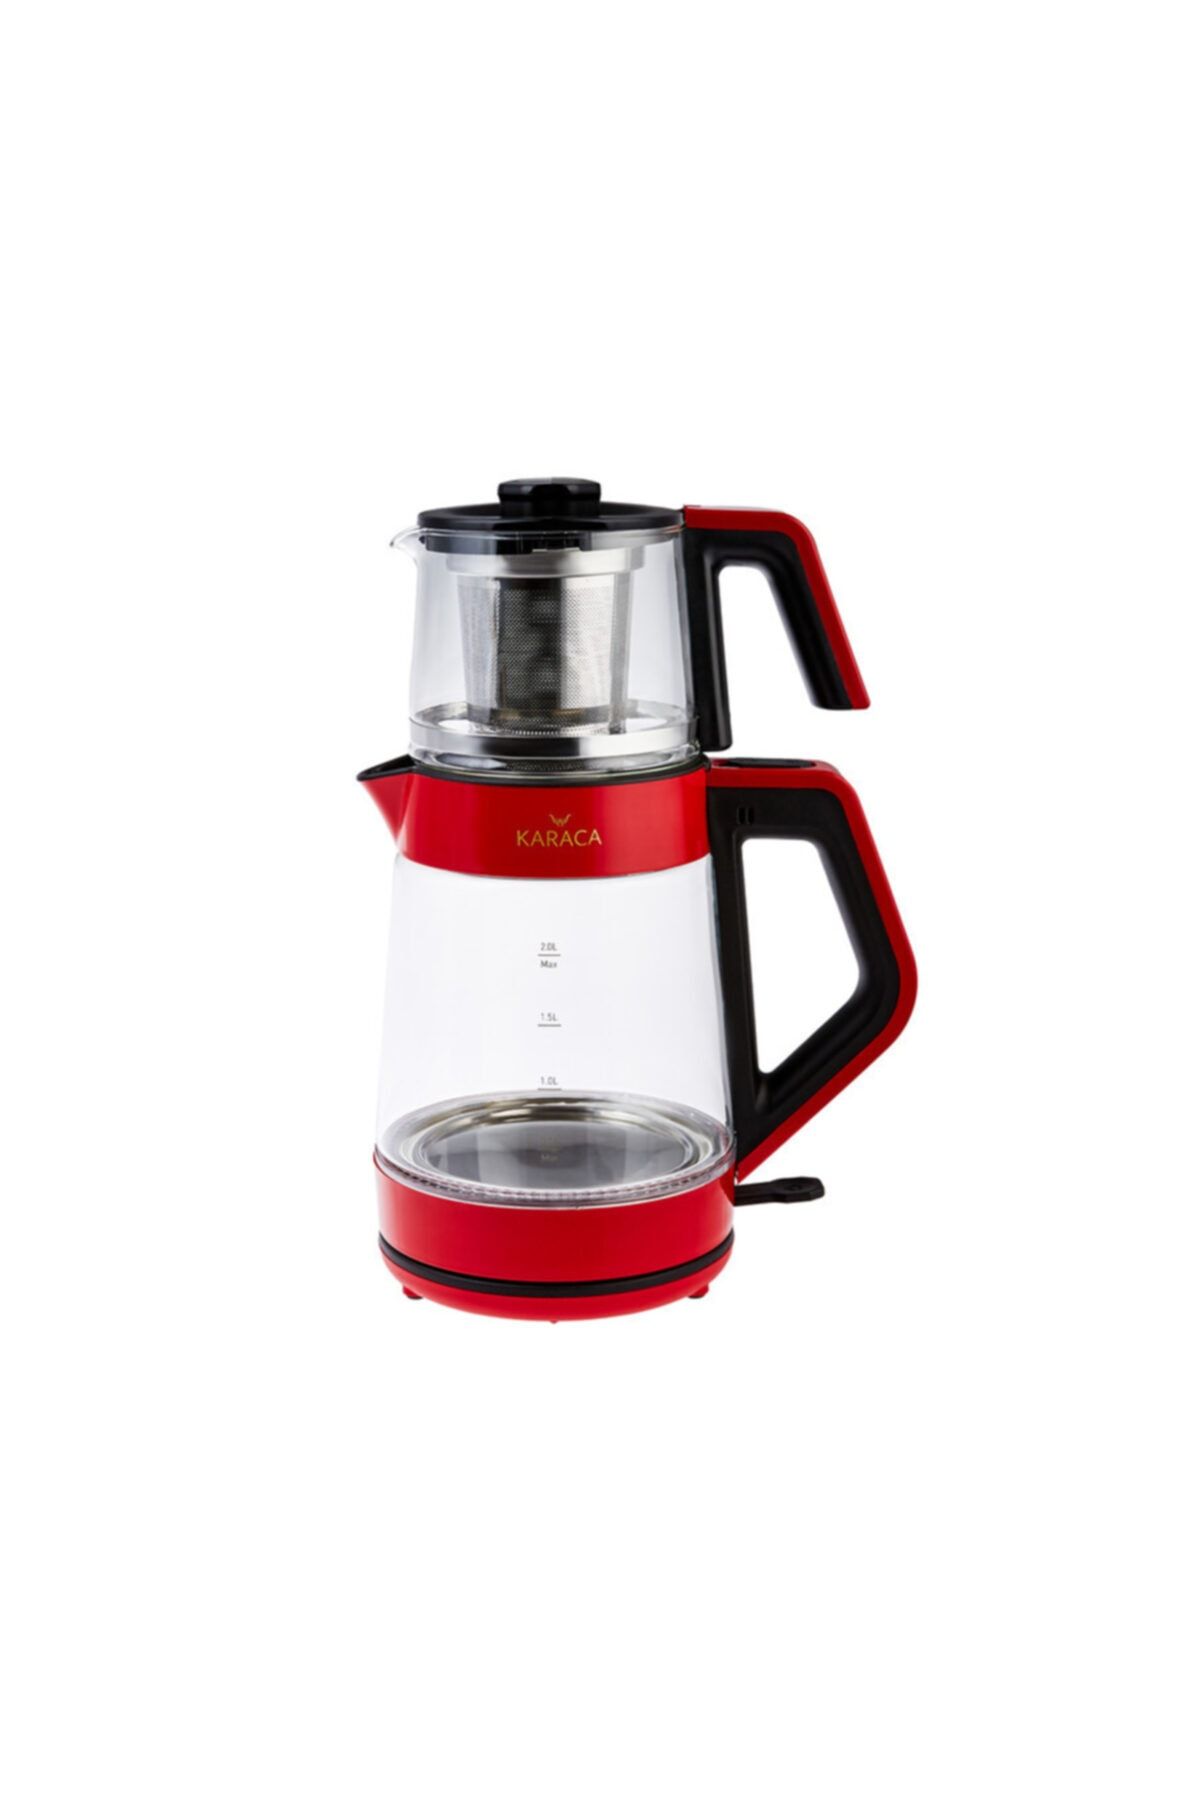 Karaca Retro Kırmızı Cam Led Işıklı Çay Makinesi